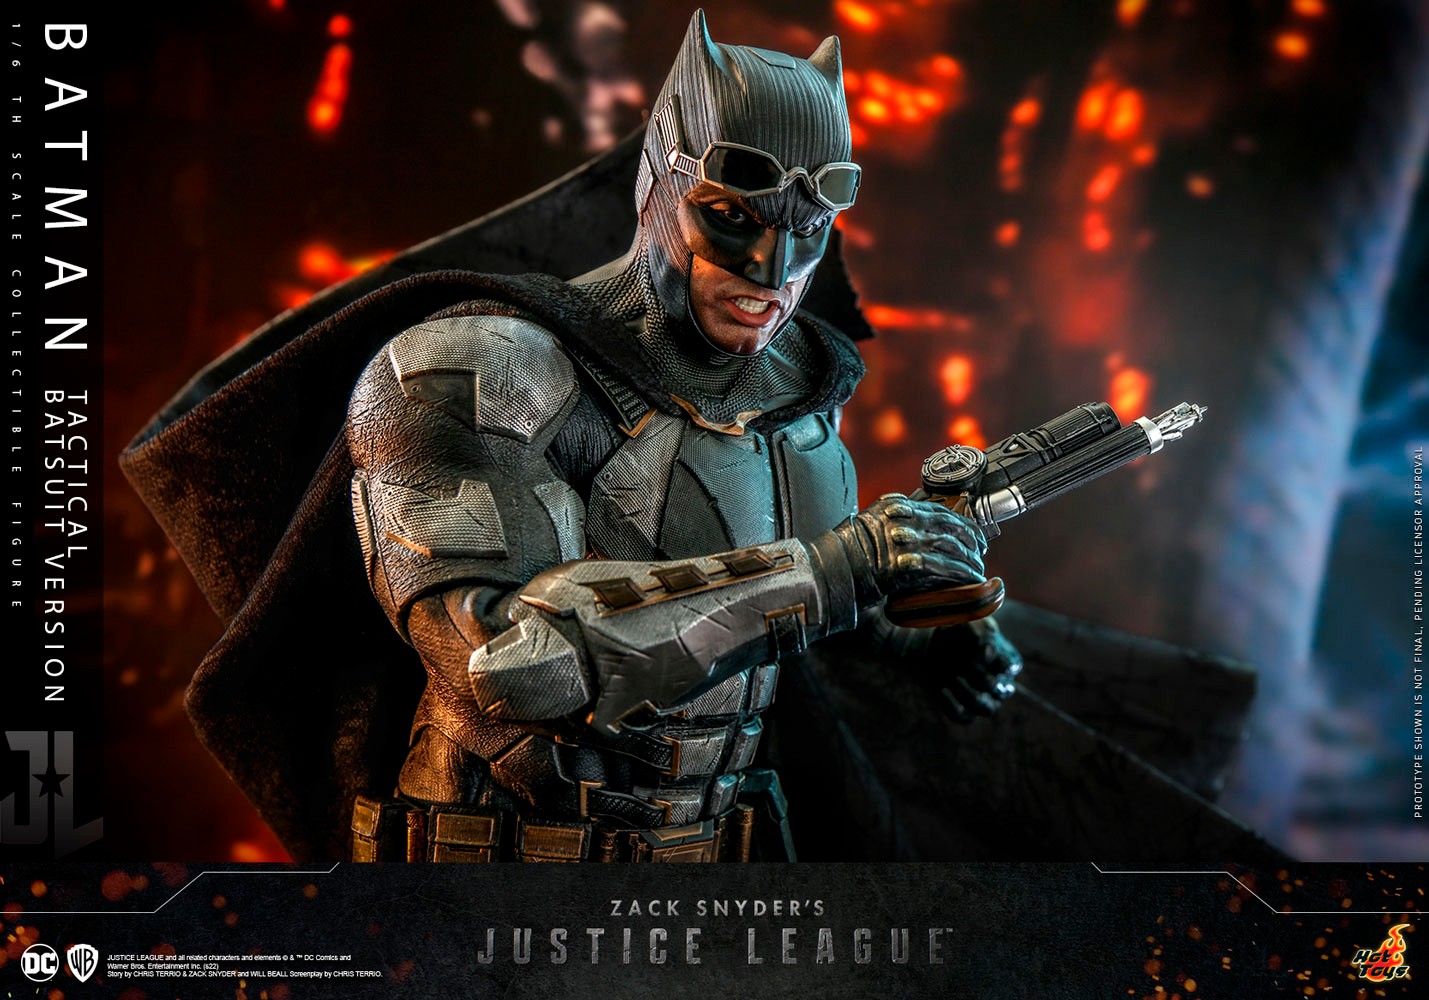 Batman (Tactical Batsuit Version)- Prototype Shown